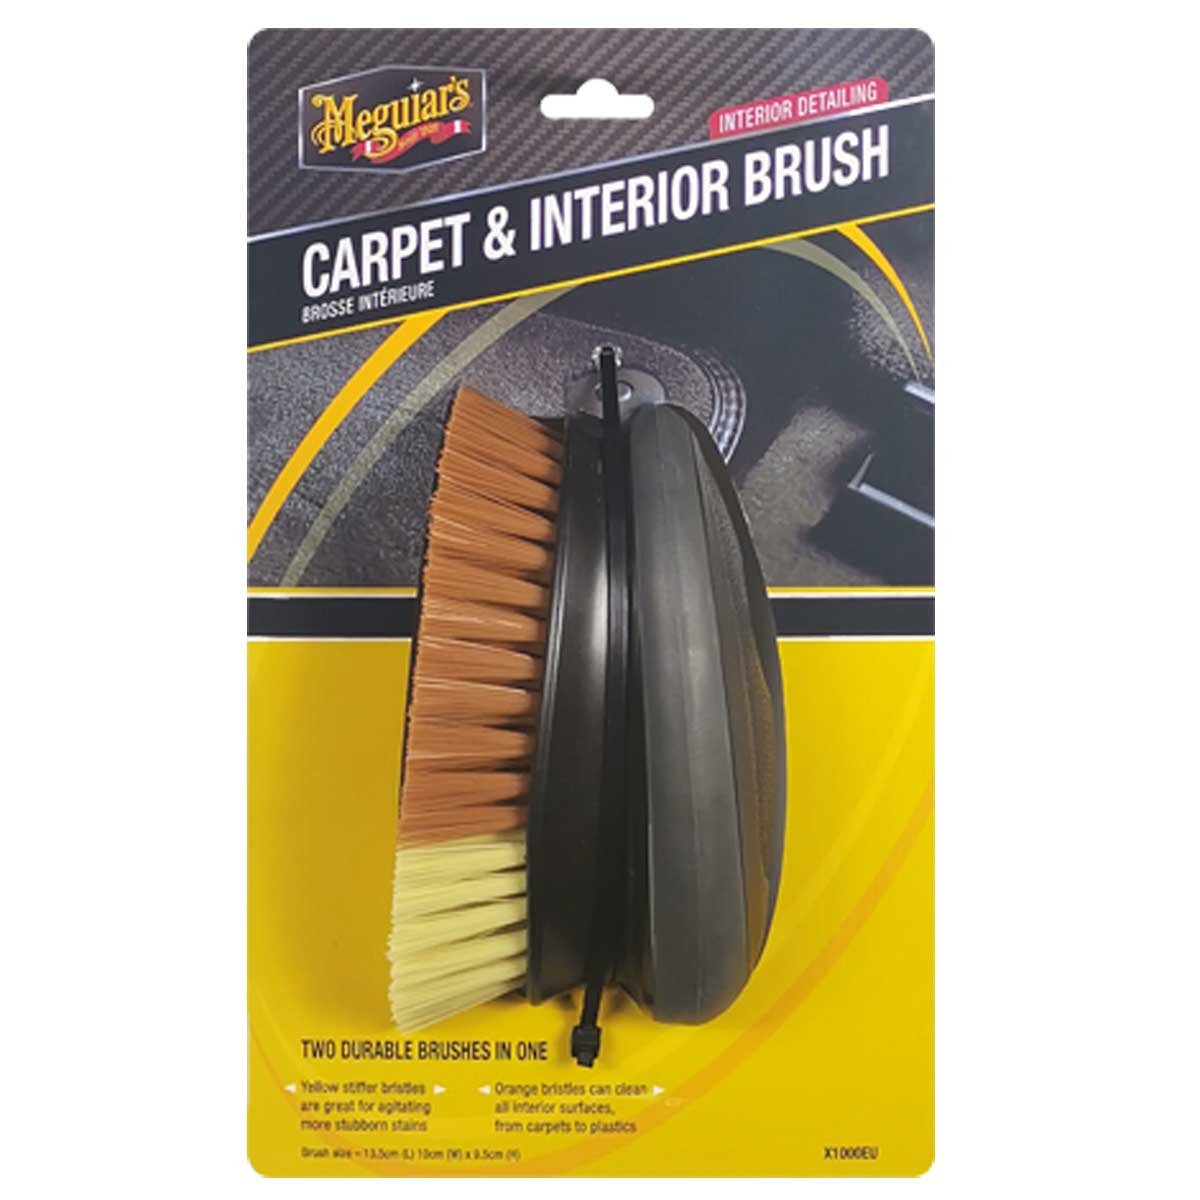 Carpet & Interior Brush